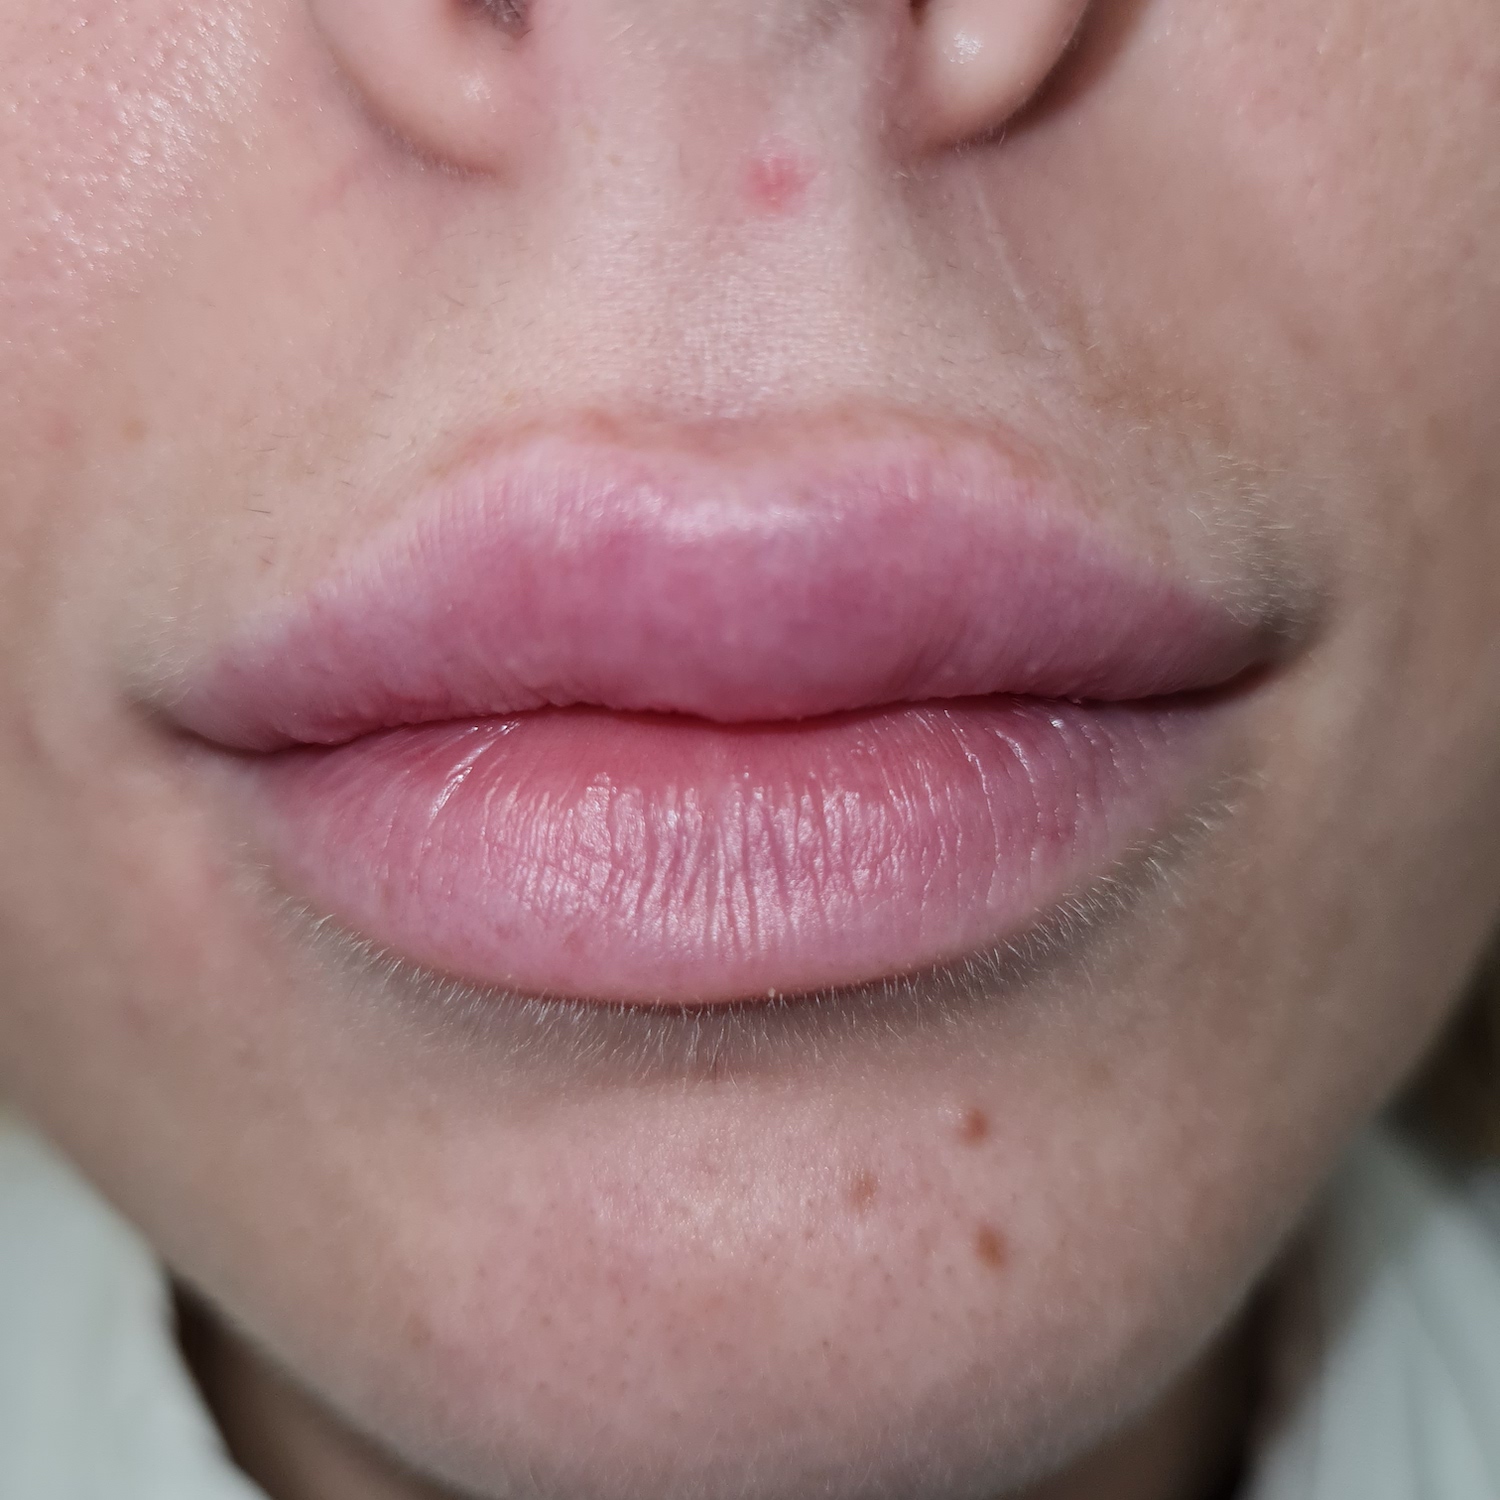 Pacijent br.1: Aplikovanje hijaluronskih filera u usne-Posle